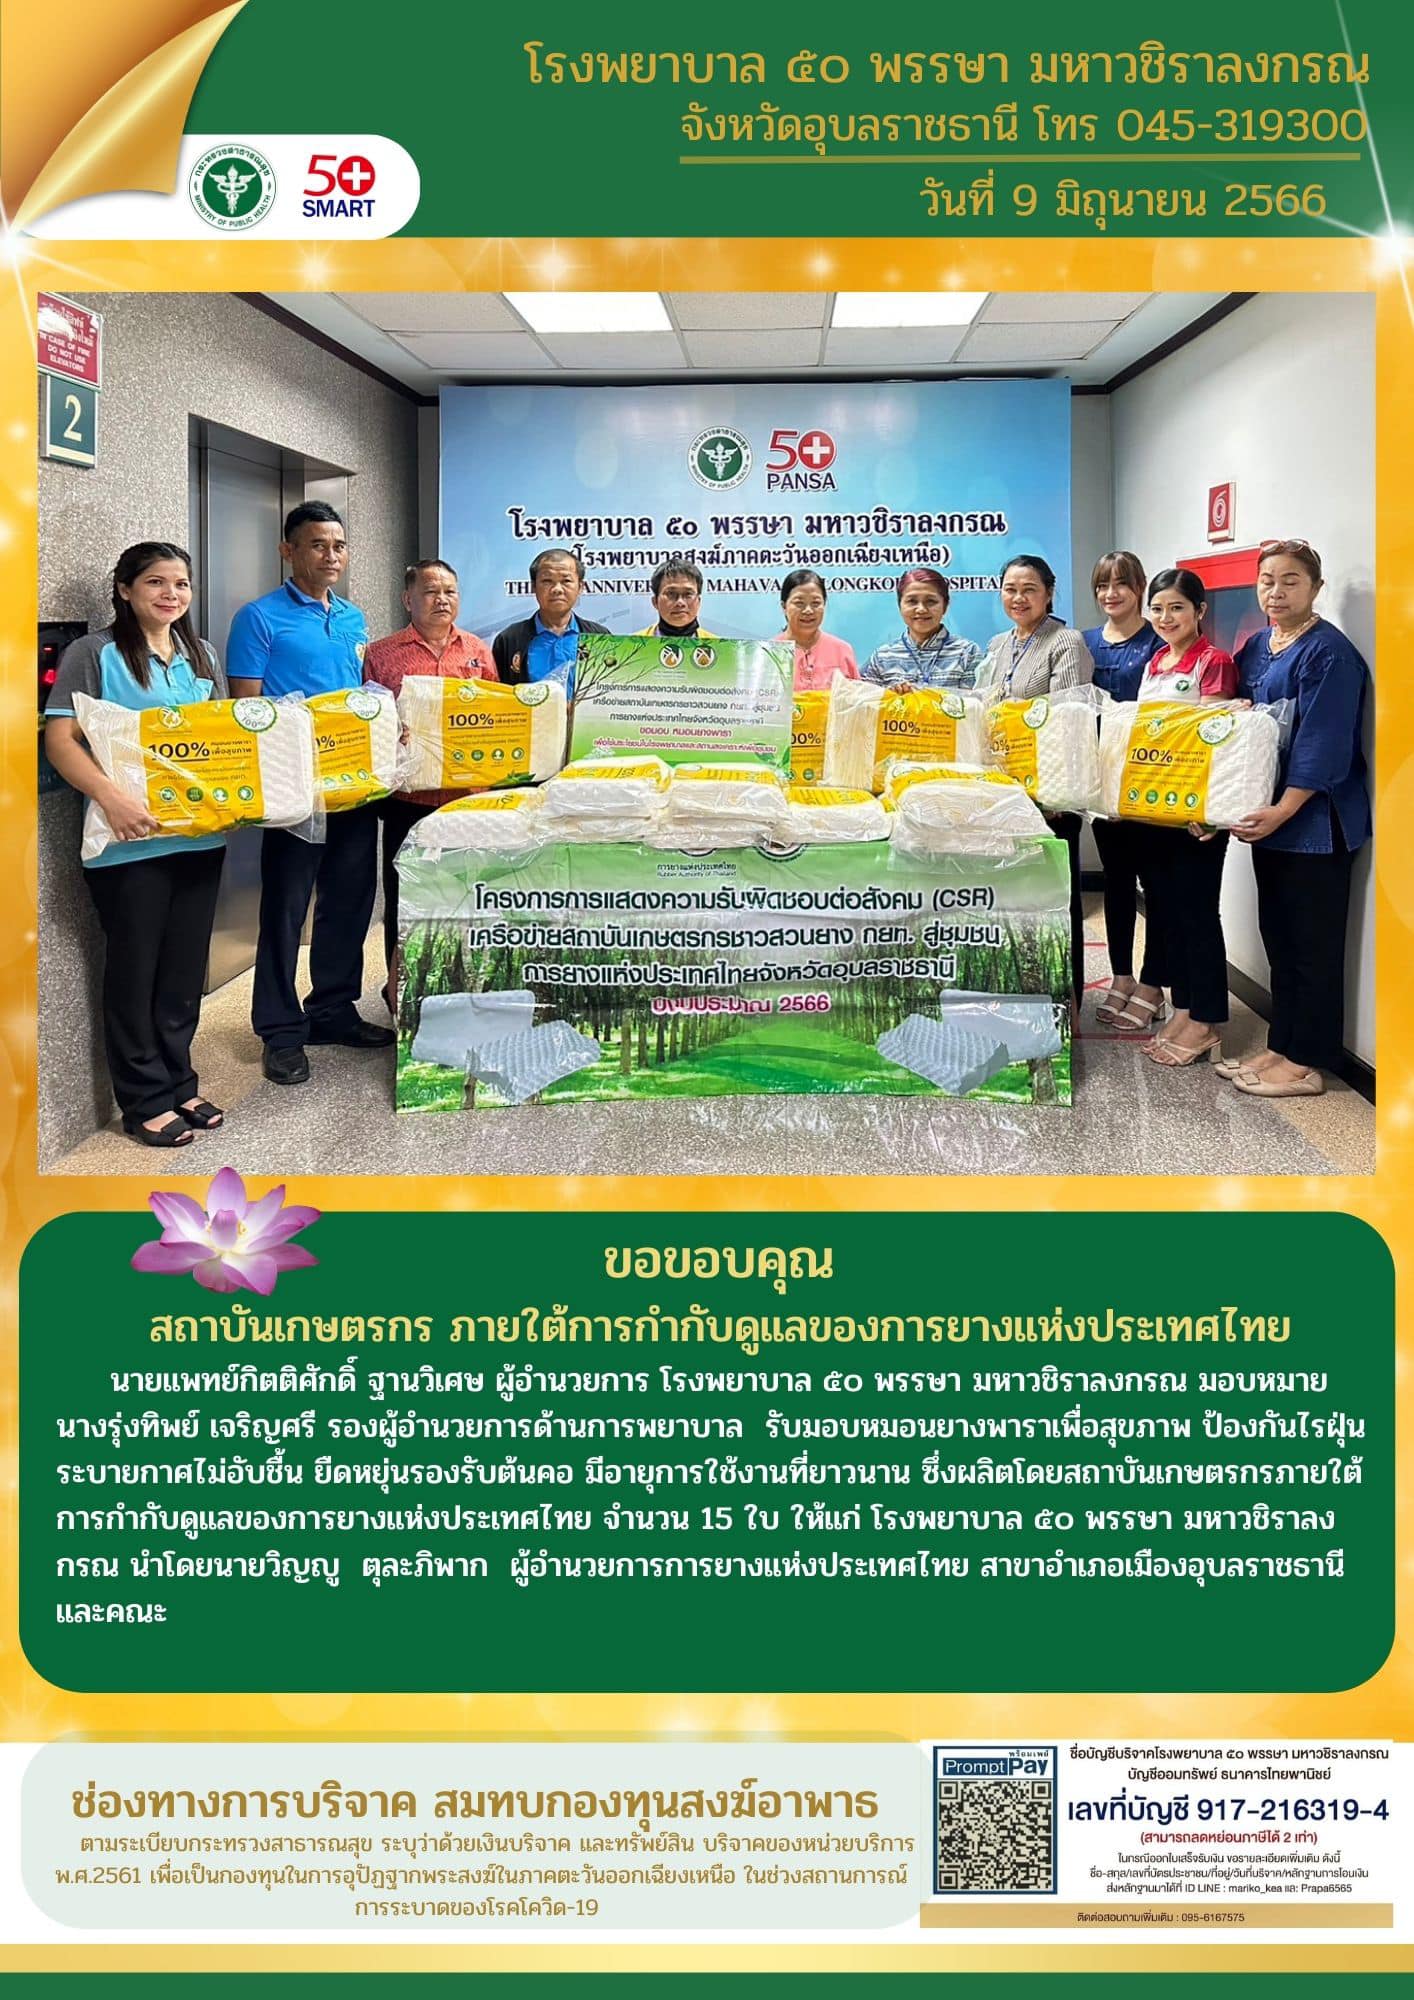 รับมอบหมอนยางพาราเพื่อสุขภาพ ป้องกันไรฝุ่น ระบายกาศไม่อับชื้น โดยสถาบันเกษตรกรภายใต้การกำกับดูแลของการยางแห่งประเทศไทย